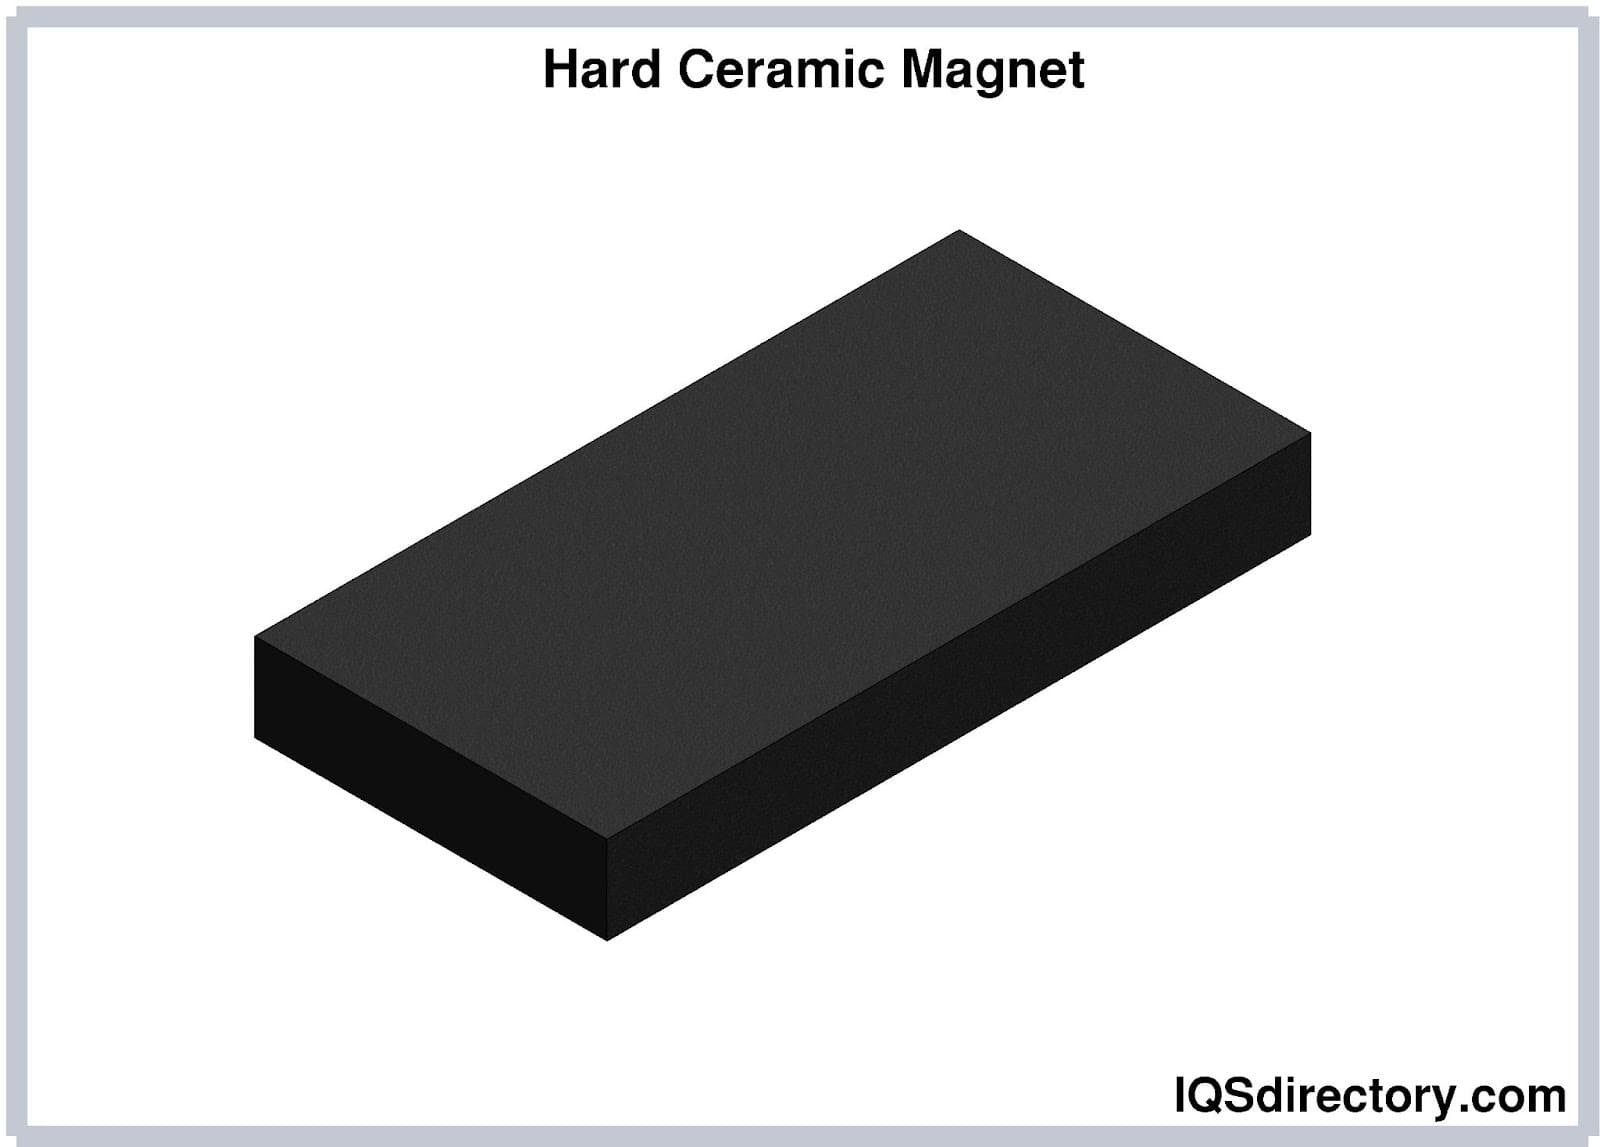 Hard Ceramic Magnet